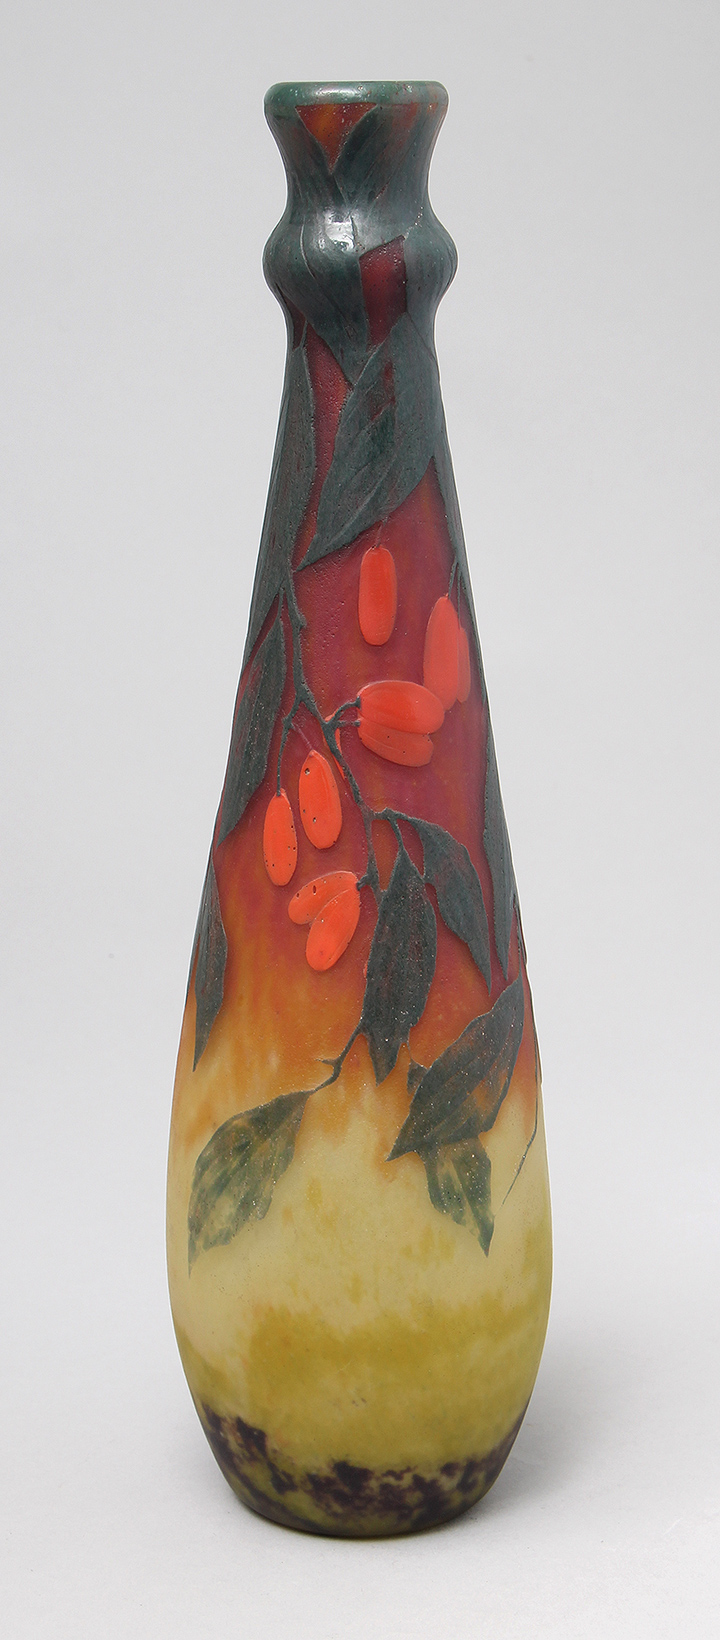 Applied & Wheel-Carved Orange Fruit Vase